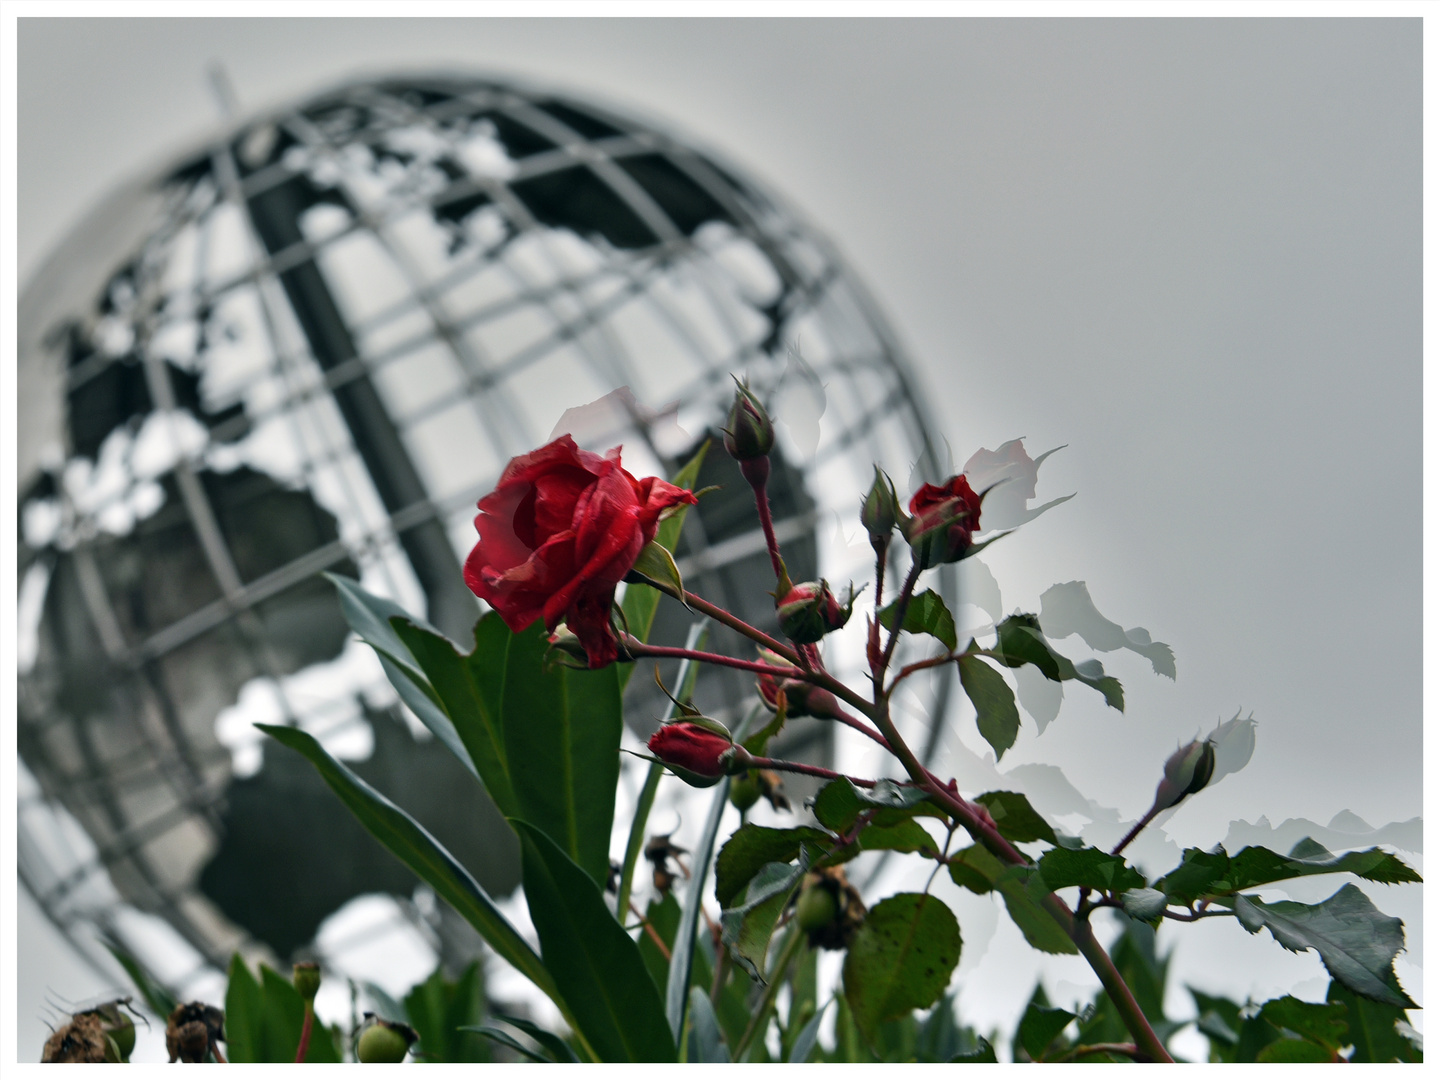 Colours of Duisburg 26 - Die Rose, die Welt und dahinter die Reihenhäuser